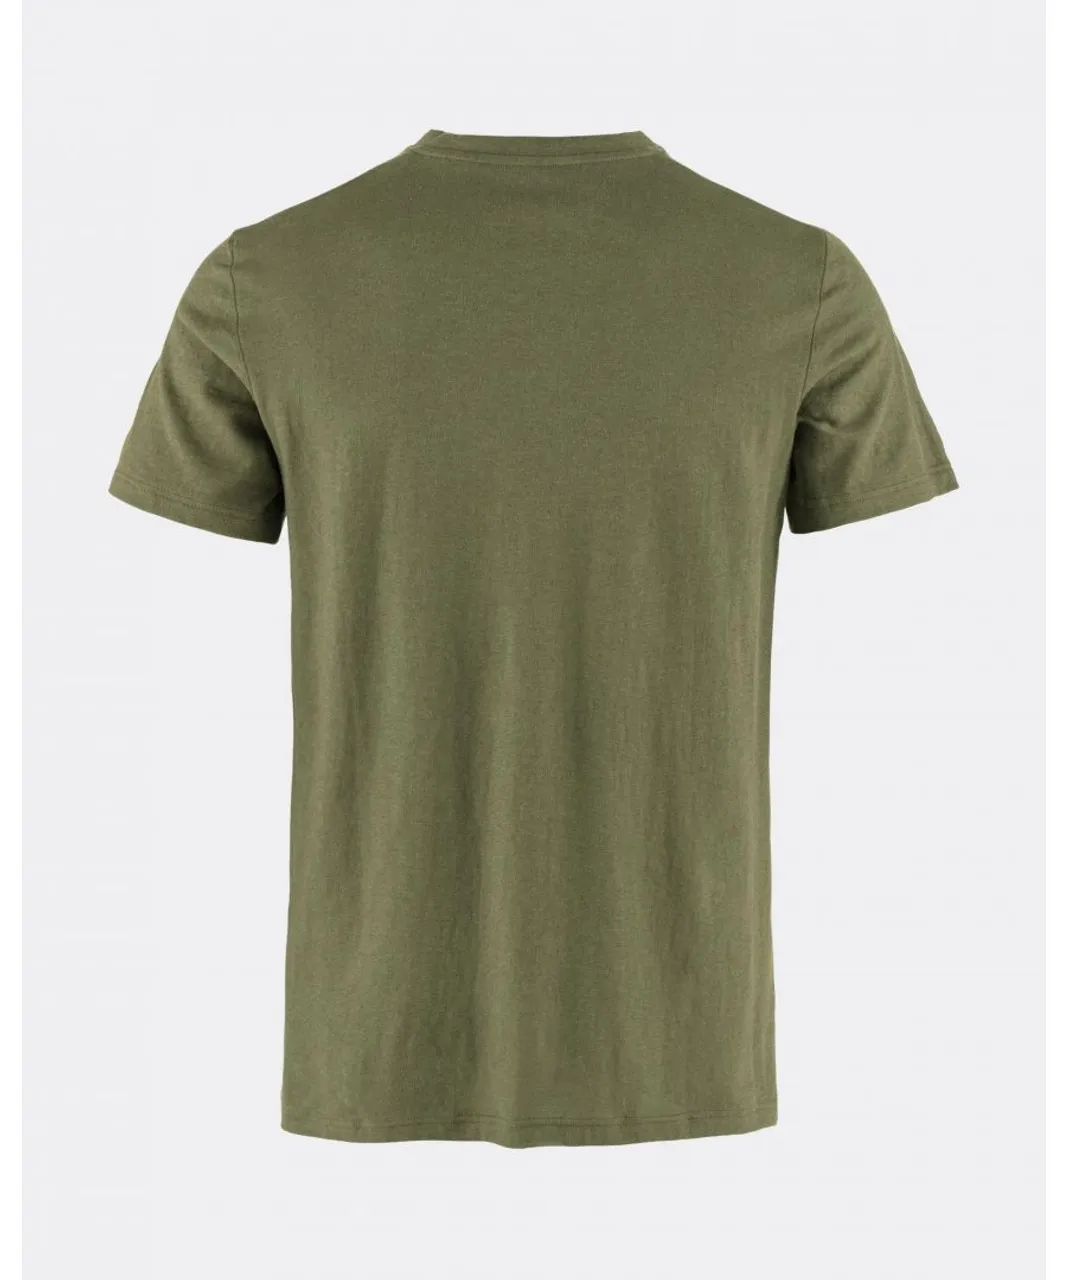 Fjallraven Mens Hemp Blend T-Shirt - Green